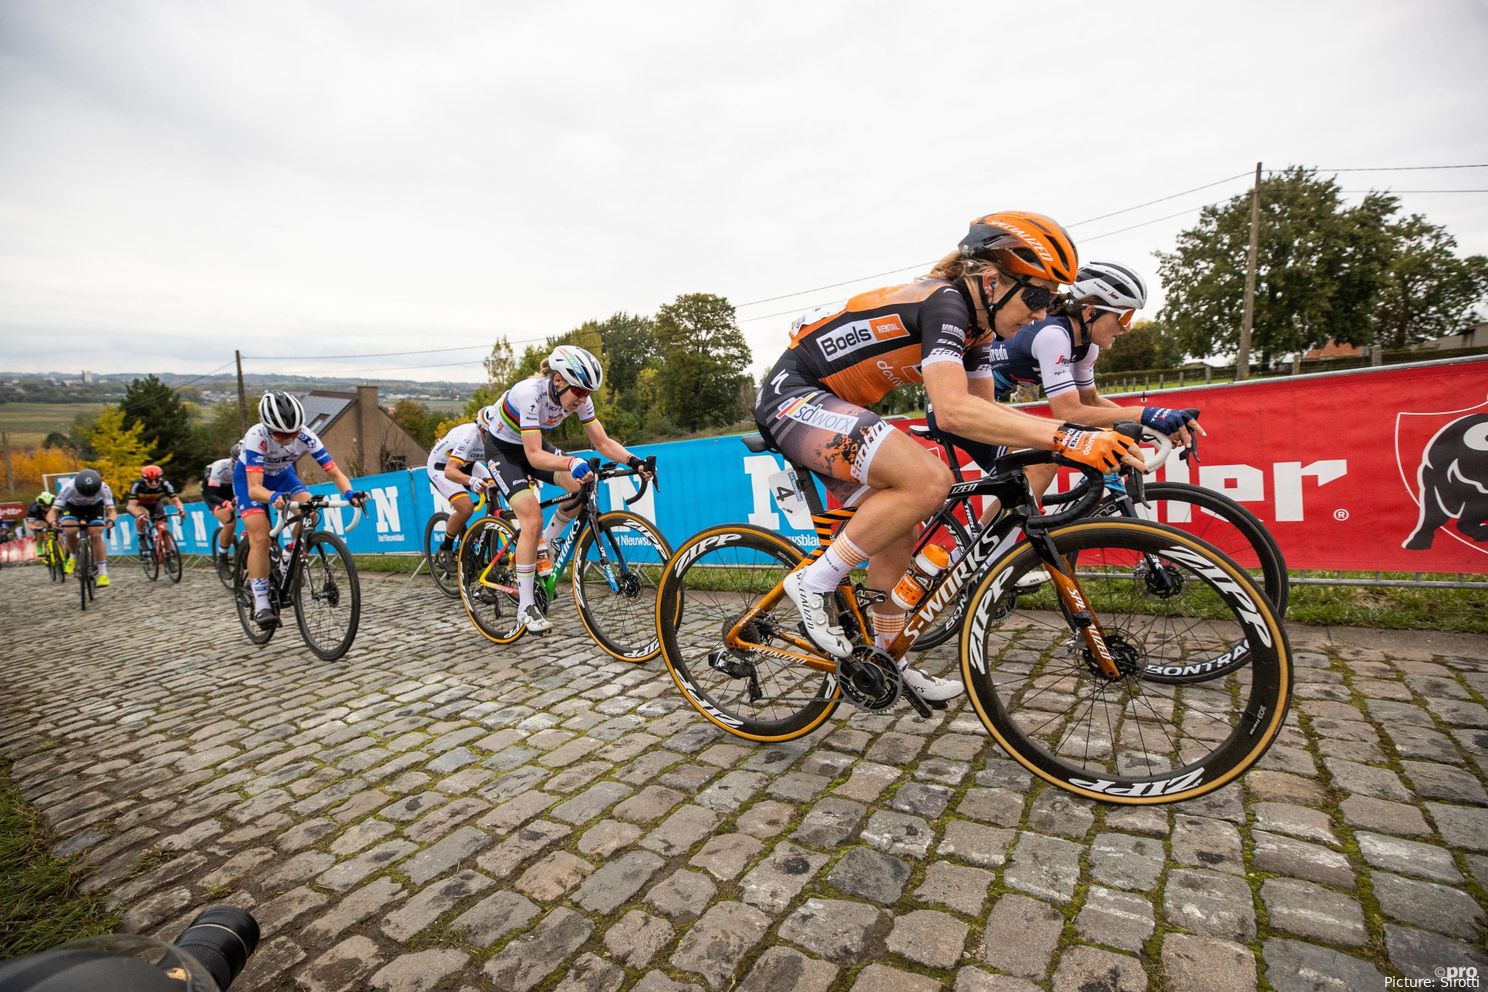 A SD Worx confirma o regresso de Anna van der Breggen ao ciclismo profissional em 2025: "Se ainda quero ser uma vencedora? Claro que sim"